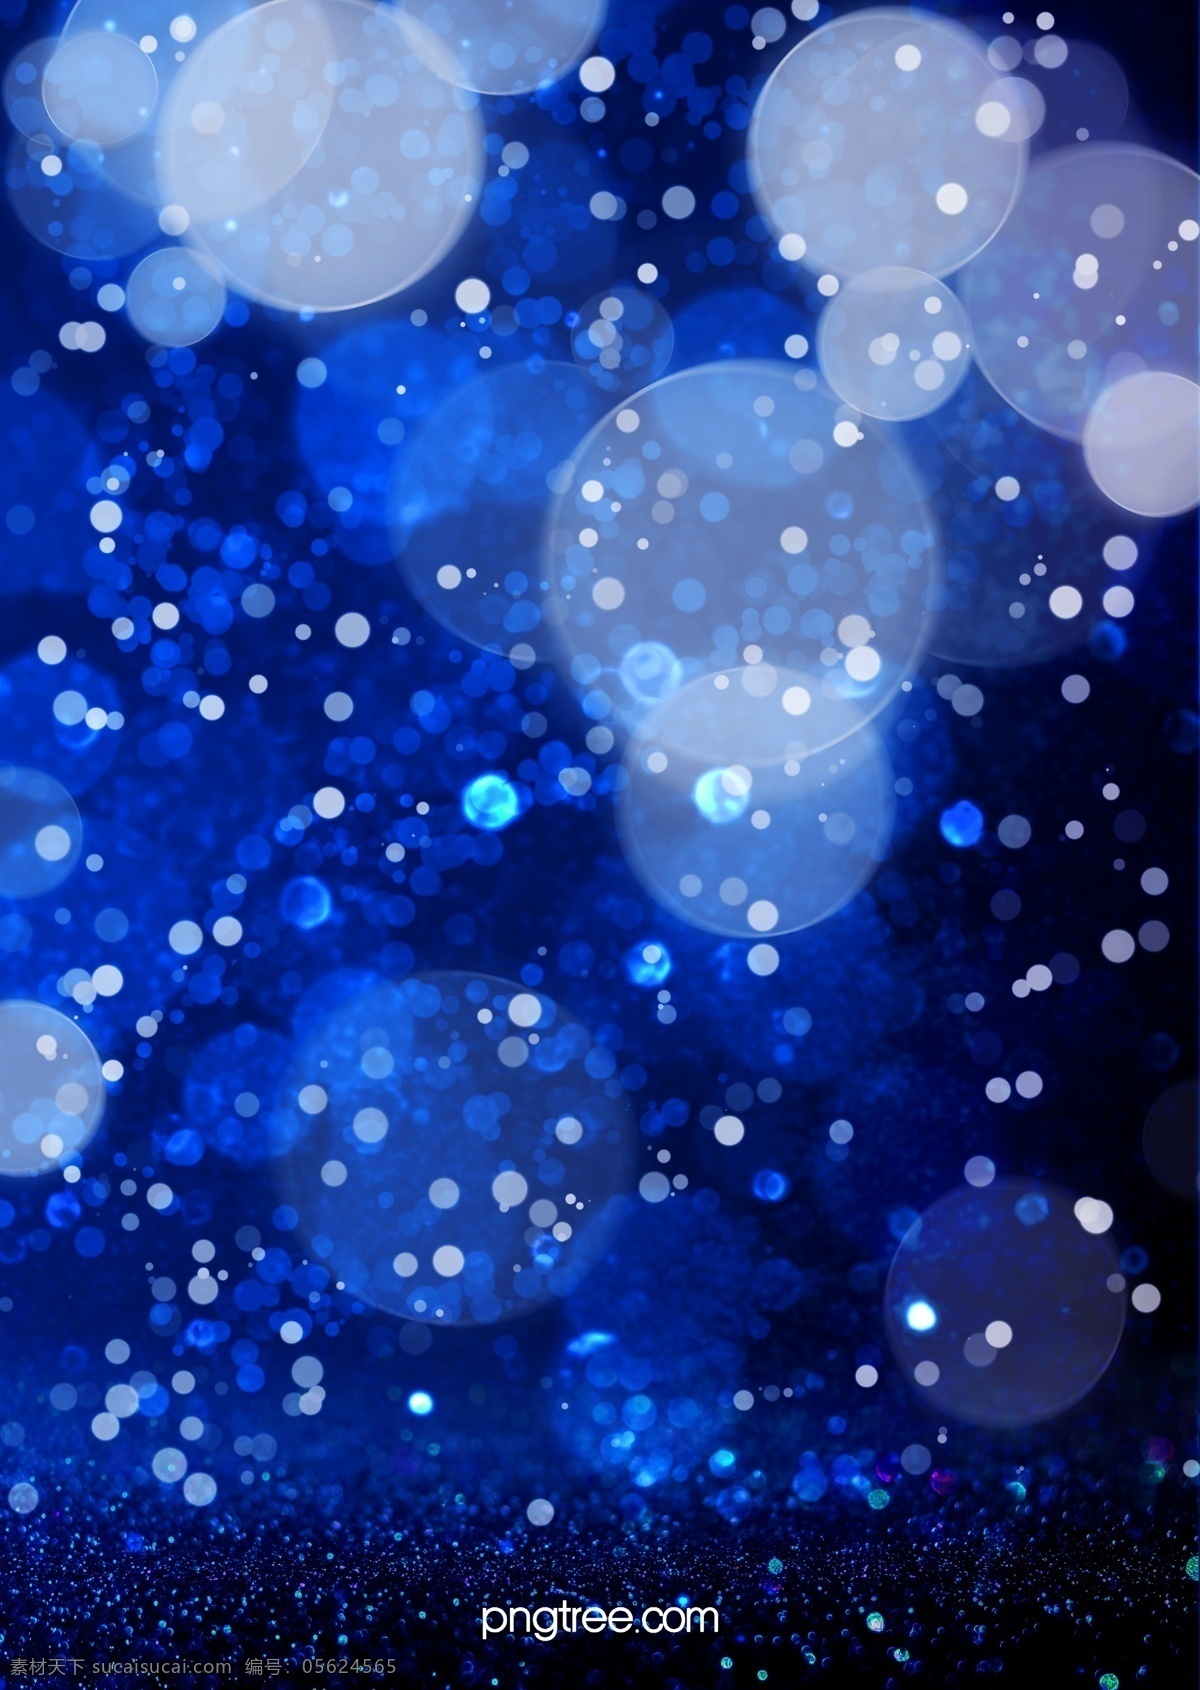 梦幻 创意 质感 蓝色 背景图片 光斑 glitter 渐变 光点 炫彩 蓝色背景 星光点点 背景素材 分层